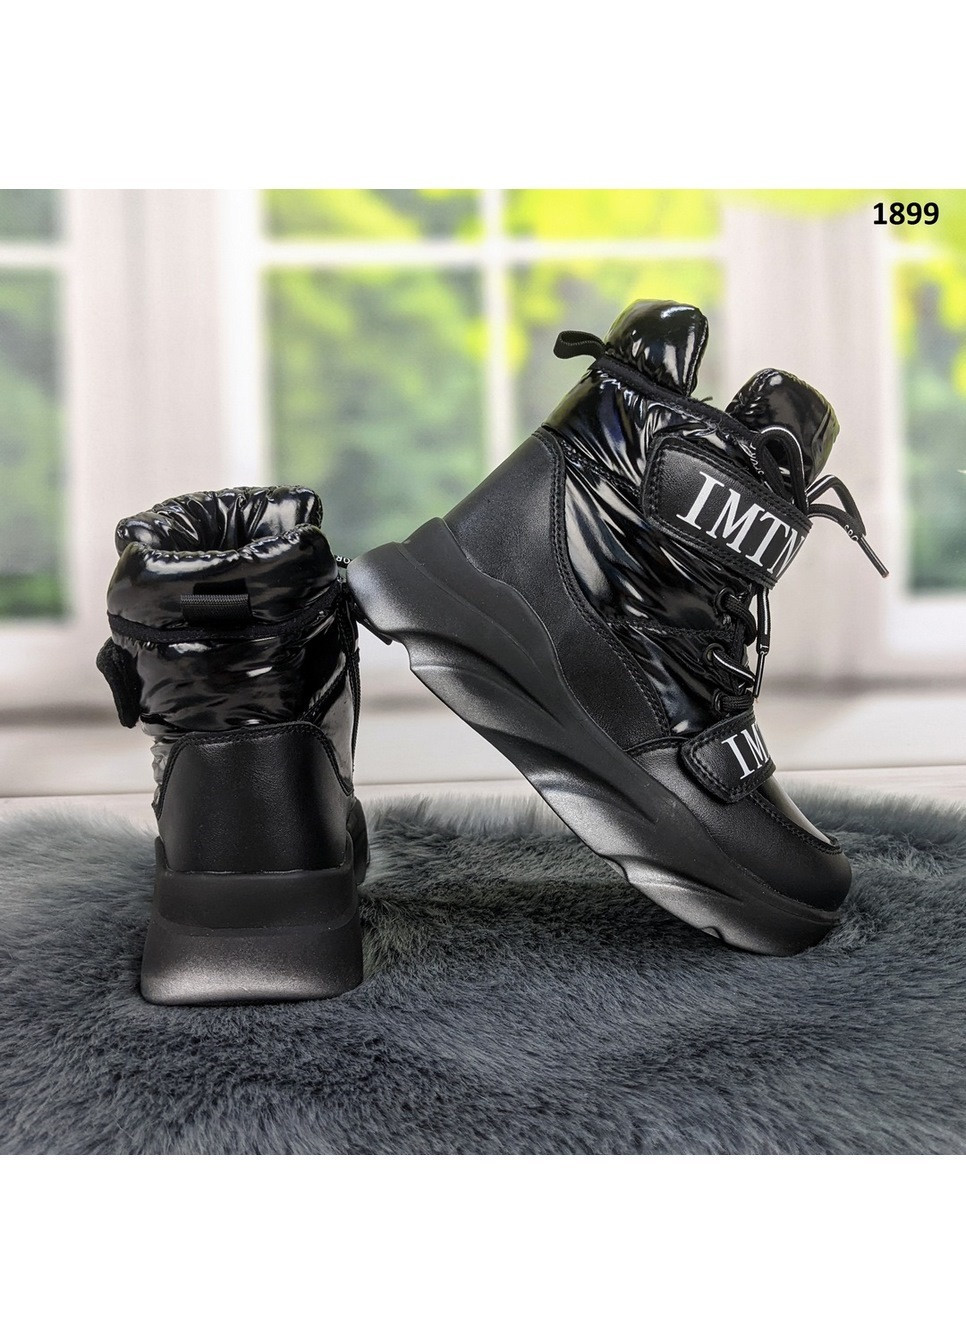 Черные повседневные зимние ботинки зимние детские для девочки Jong Golf